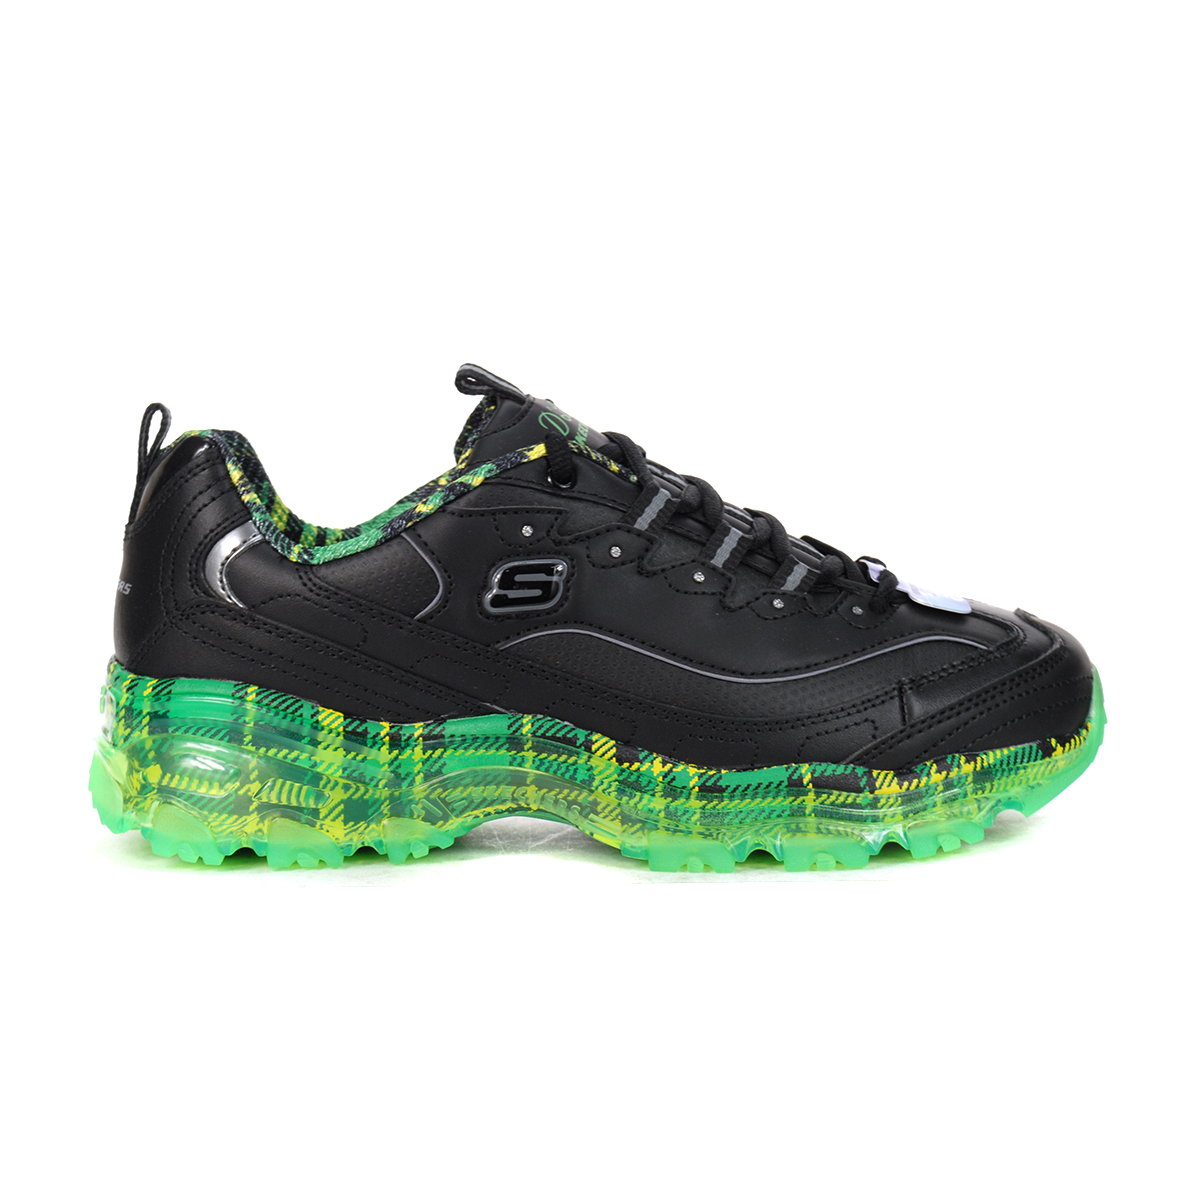 Skechers Women's D'Lites Crystal - Glam Rocker Black/Lime Running Shoes -  